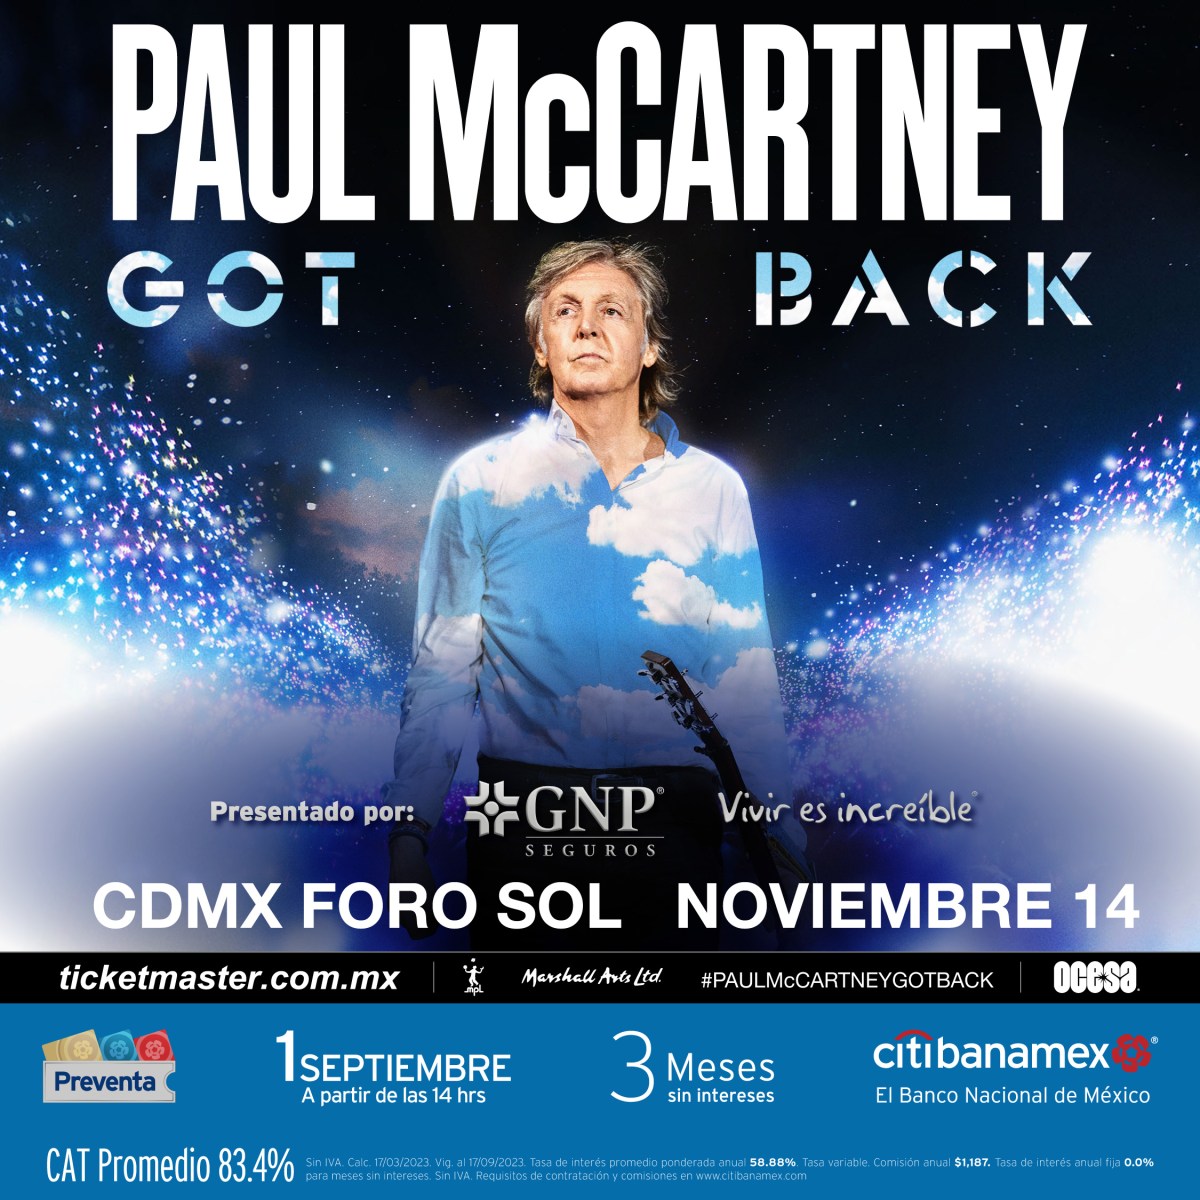 Paul McCartney en concierto en México